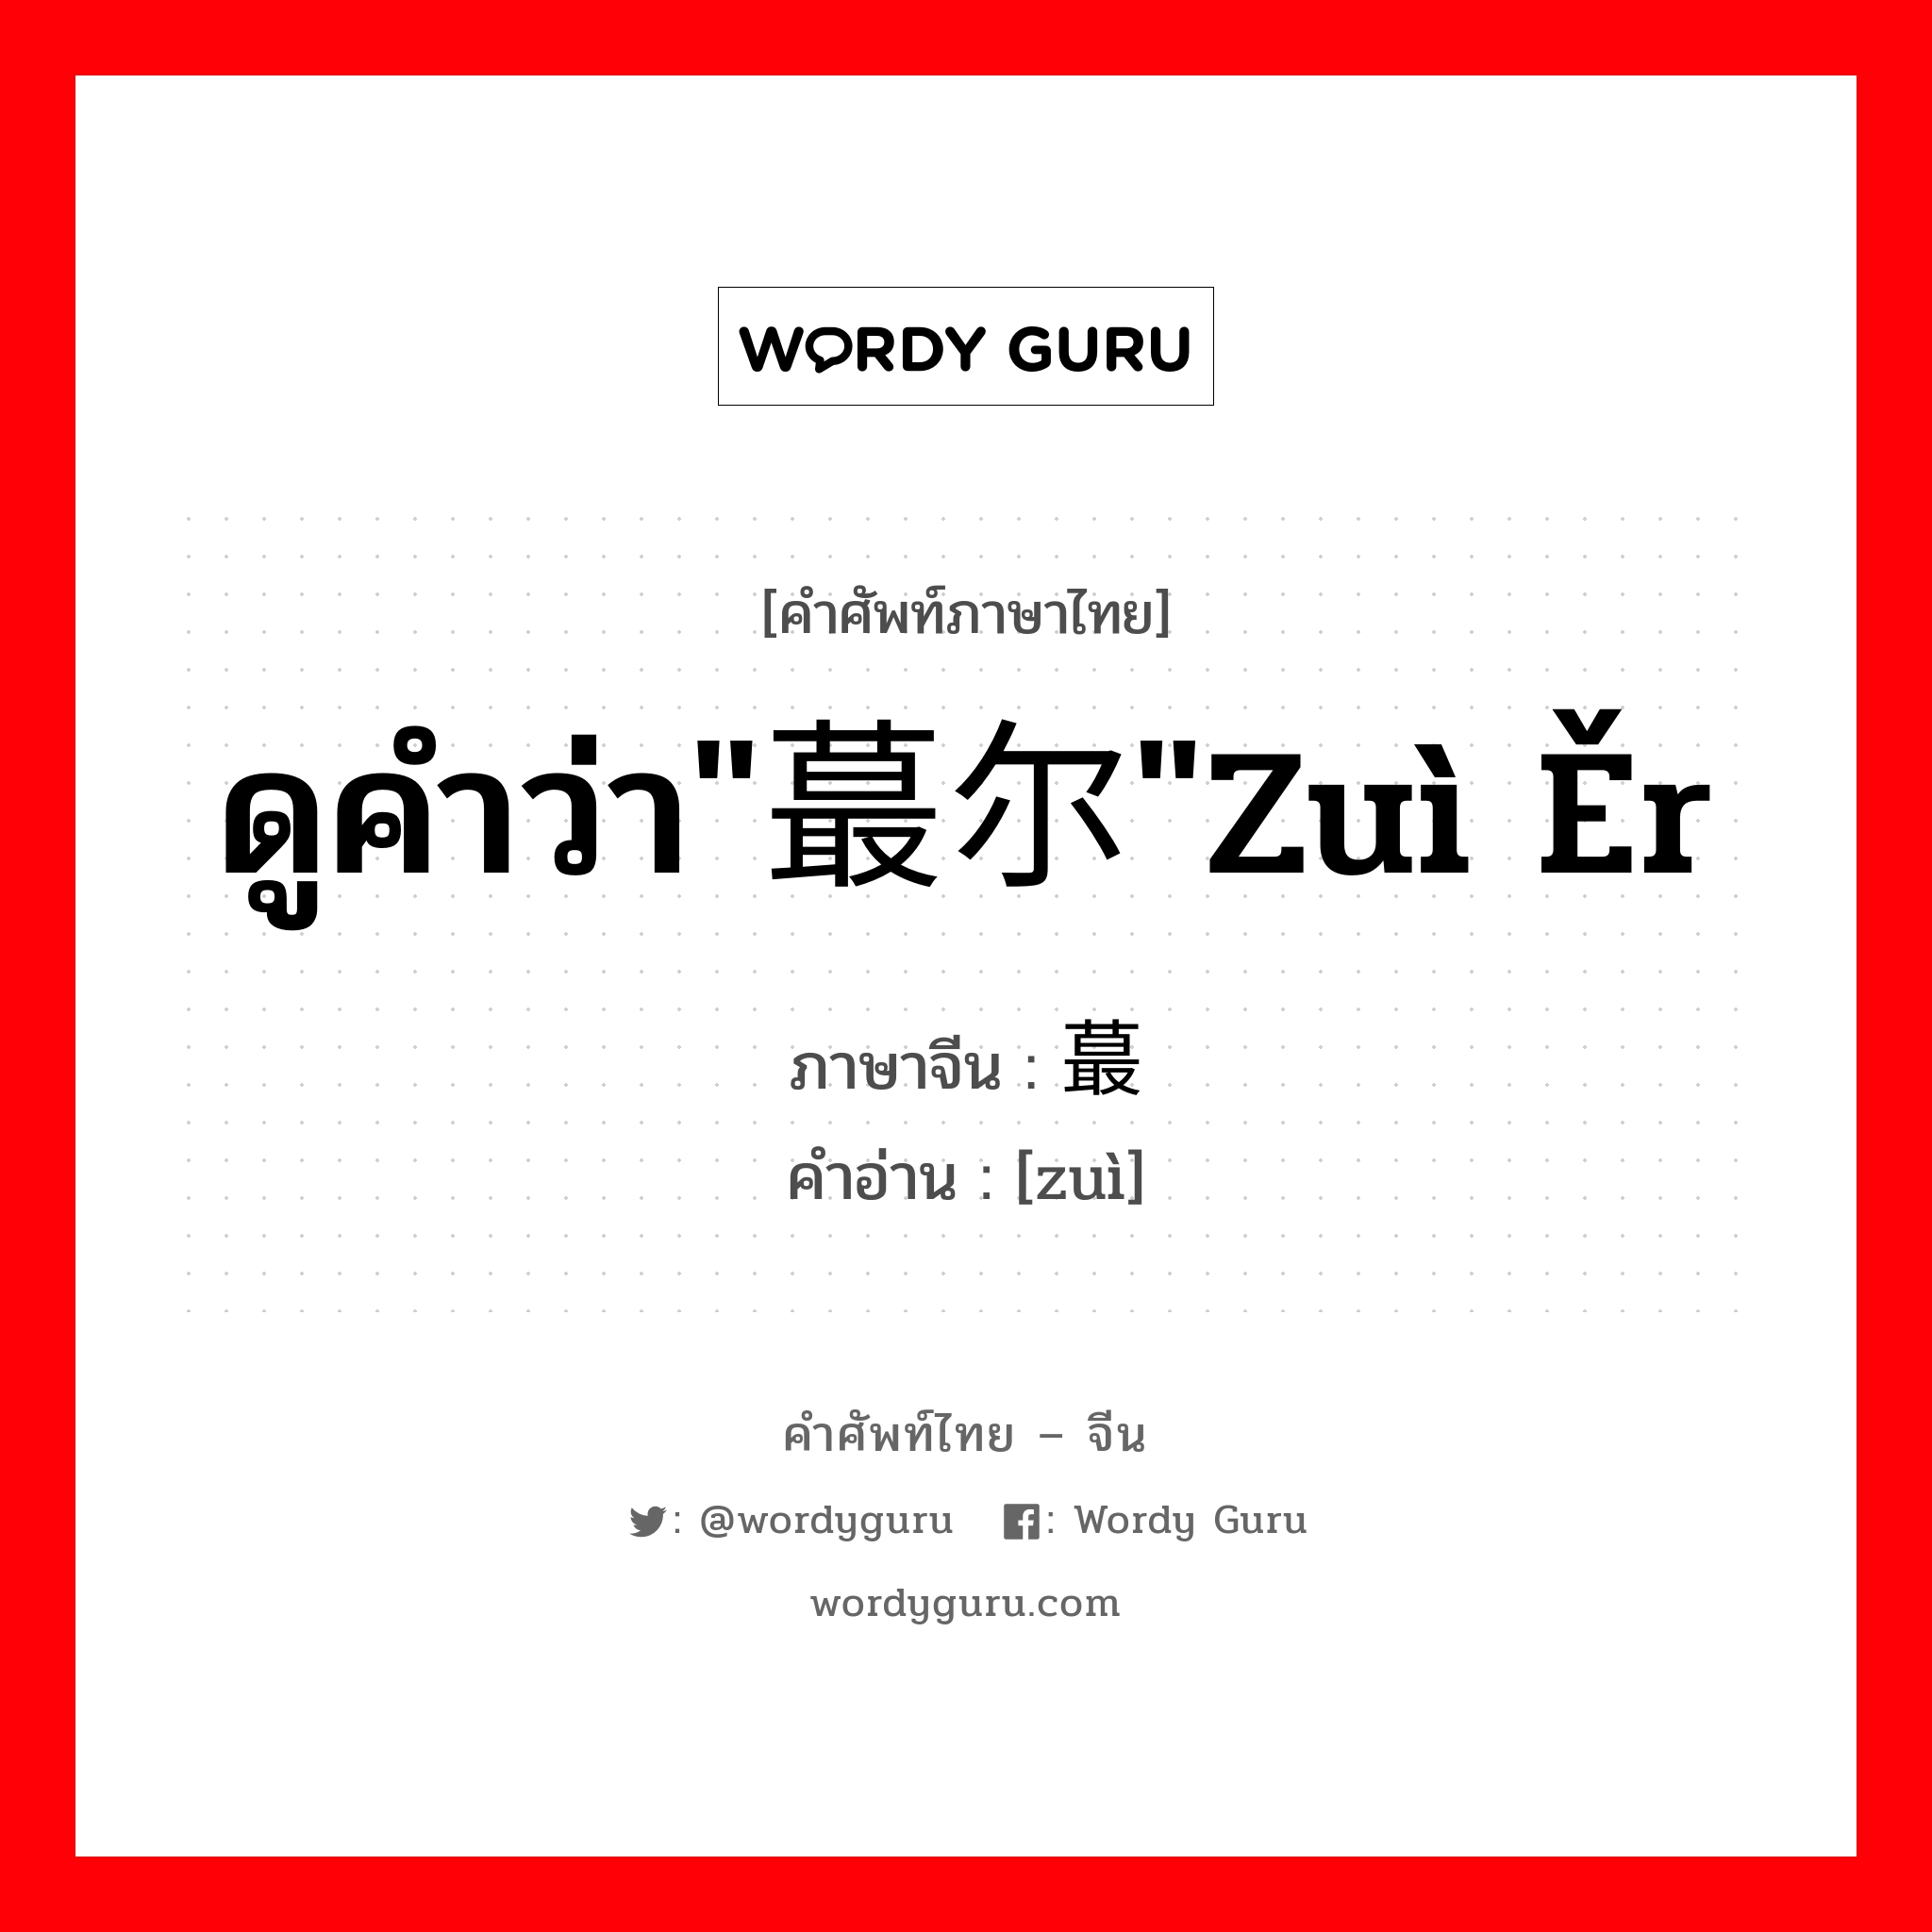 ดูคำว่า"蕞尔"zuì ěr ภาษาจีนคืออะไร, คำศัพท์ภาษาไทย - จีน ดูคำว่า"蕞尔"zuì ěr ภาษาจีน 蕞 คำอ่าน [zuì]